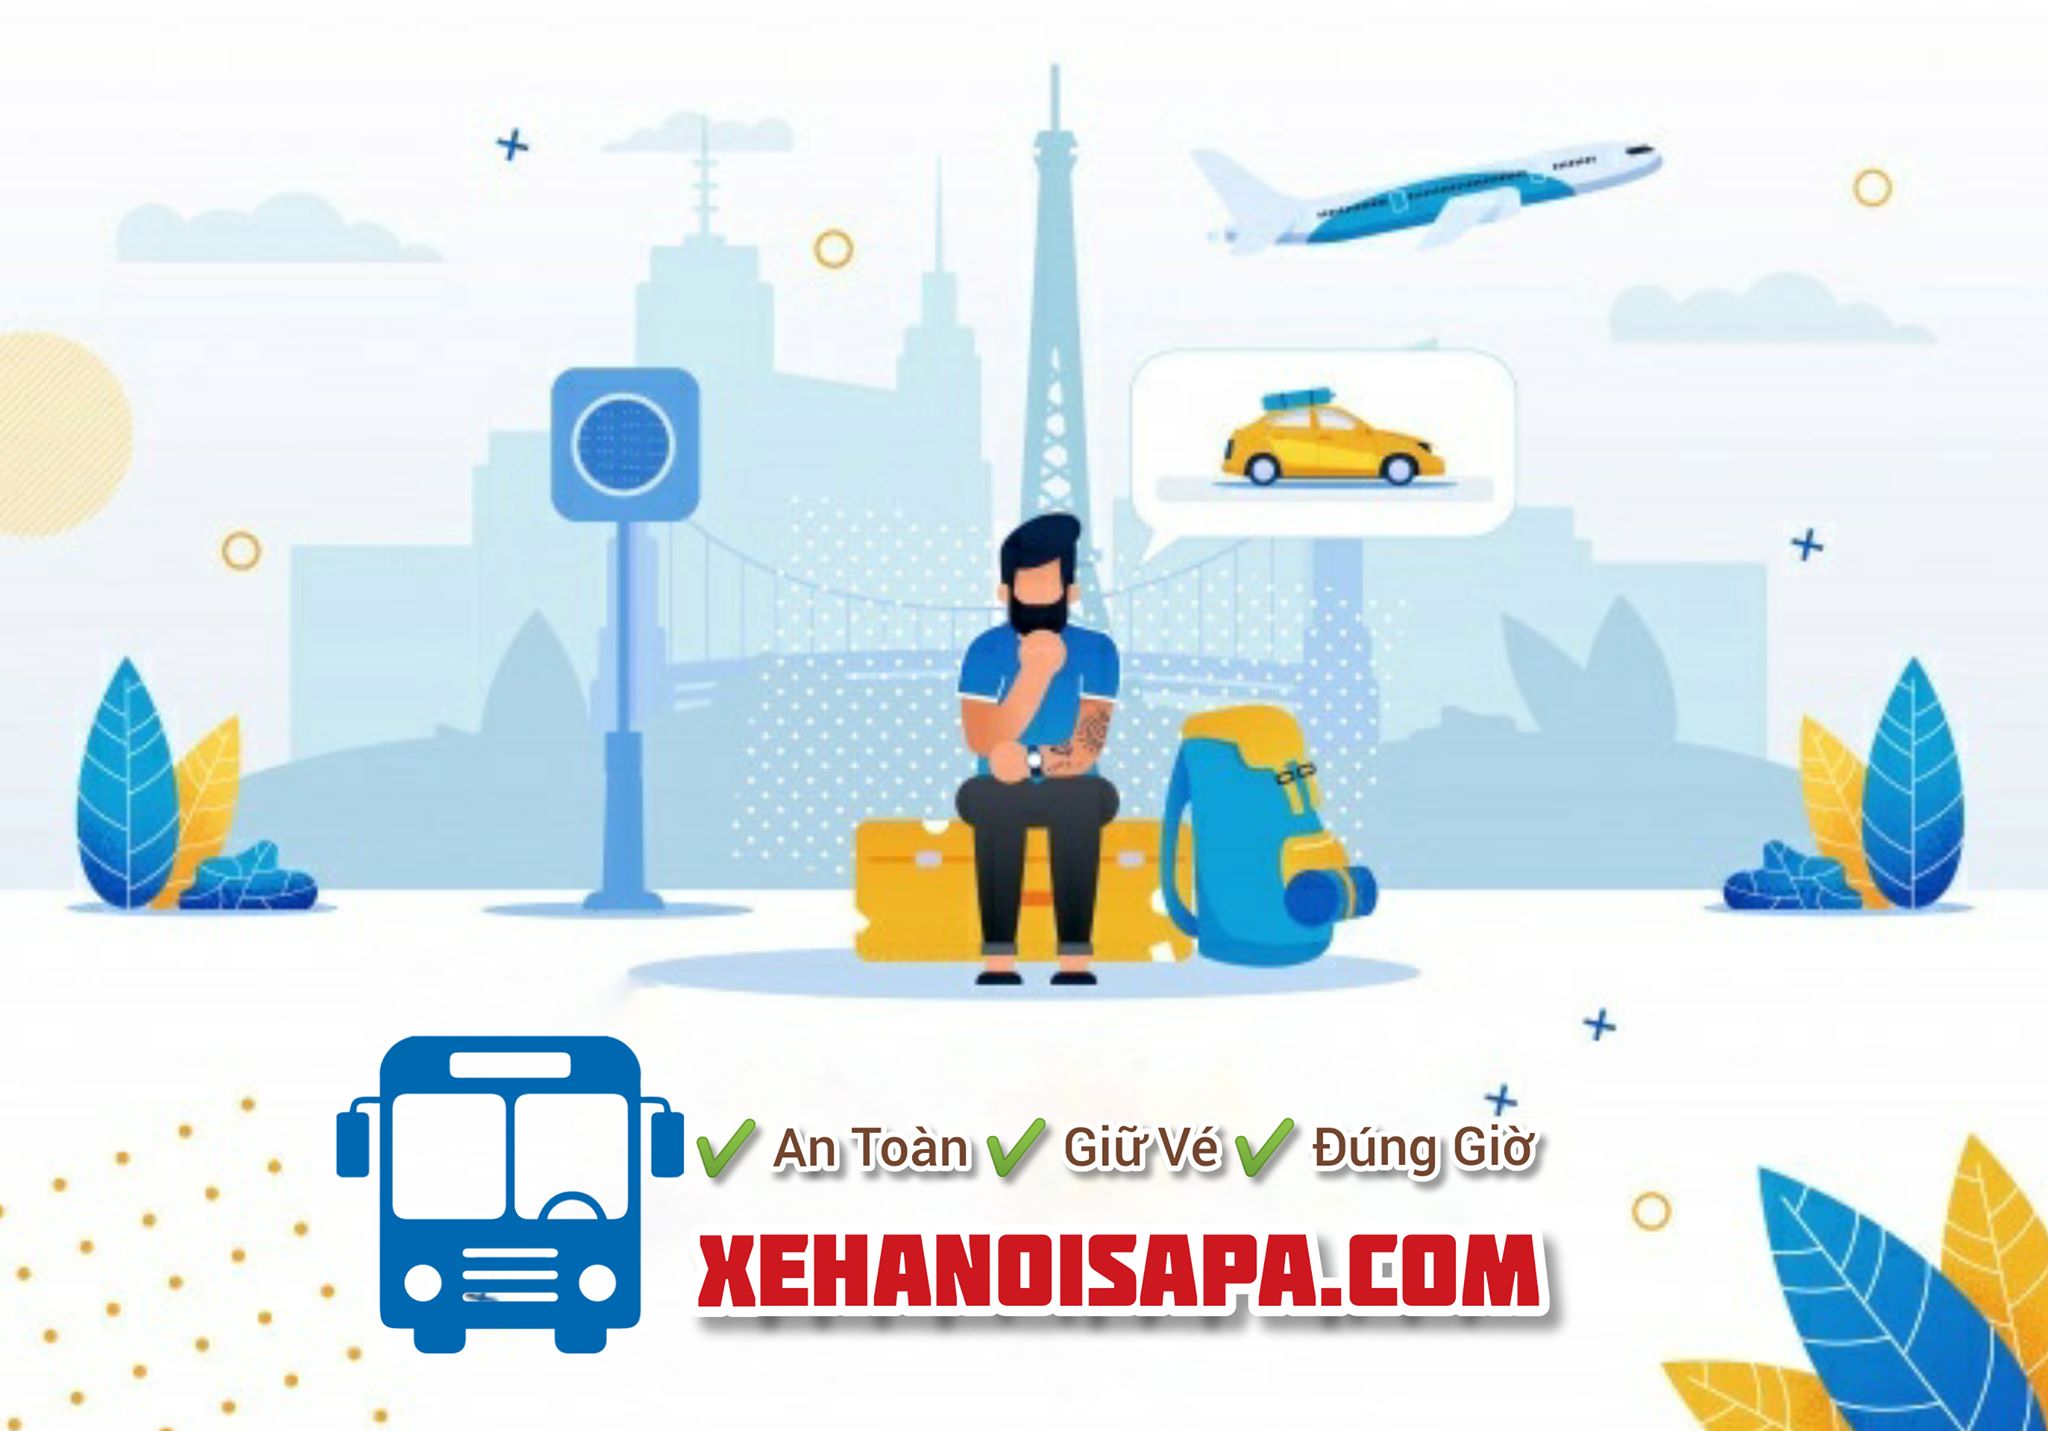 Hãng xe Én Vàng Limousine - Đặt vé nhanh chóng tại Xehanoisapa.com